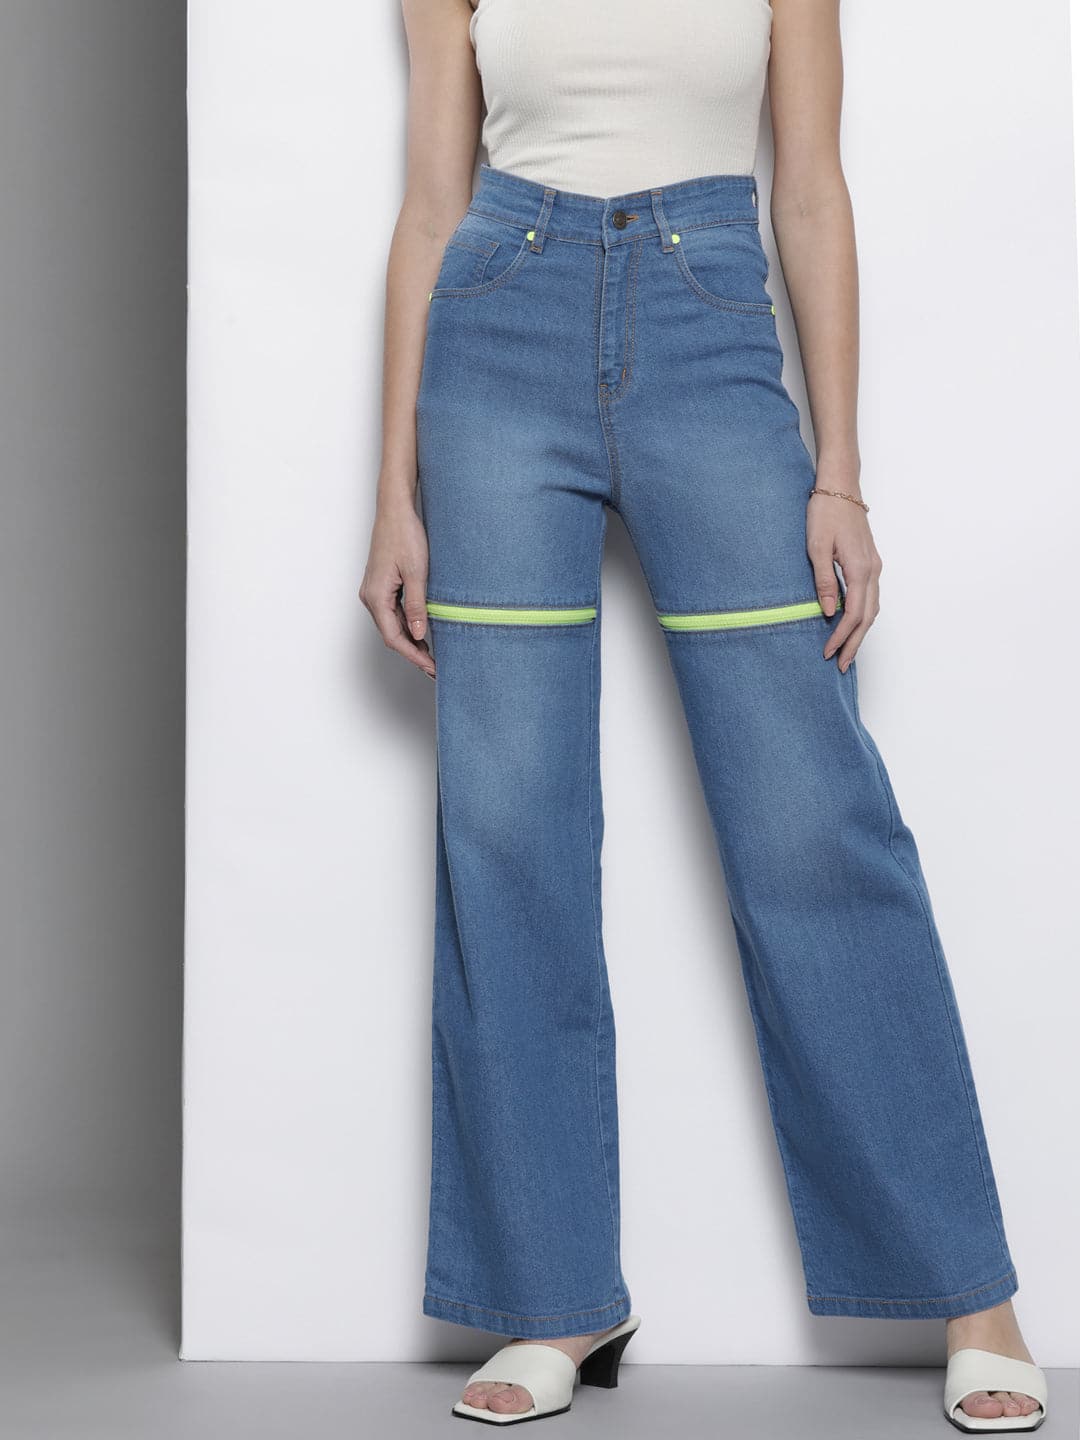 Buy Women Navy Blue Front Slit Bell Bottom Jeans Online at Sassafras